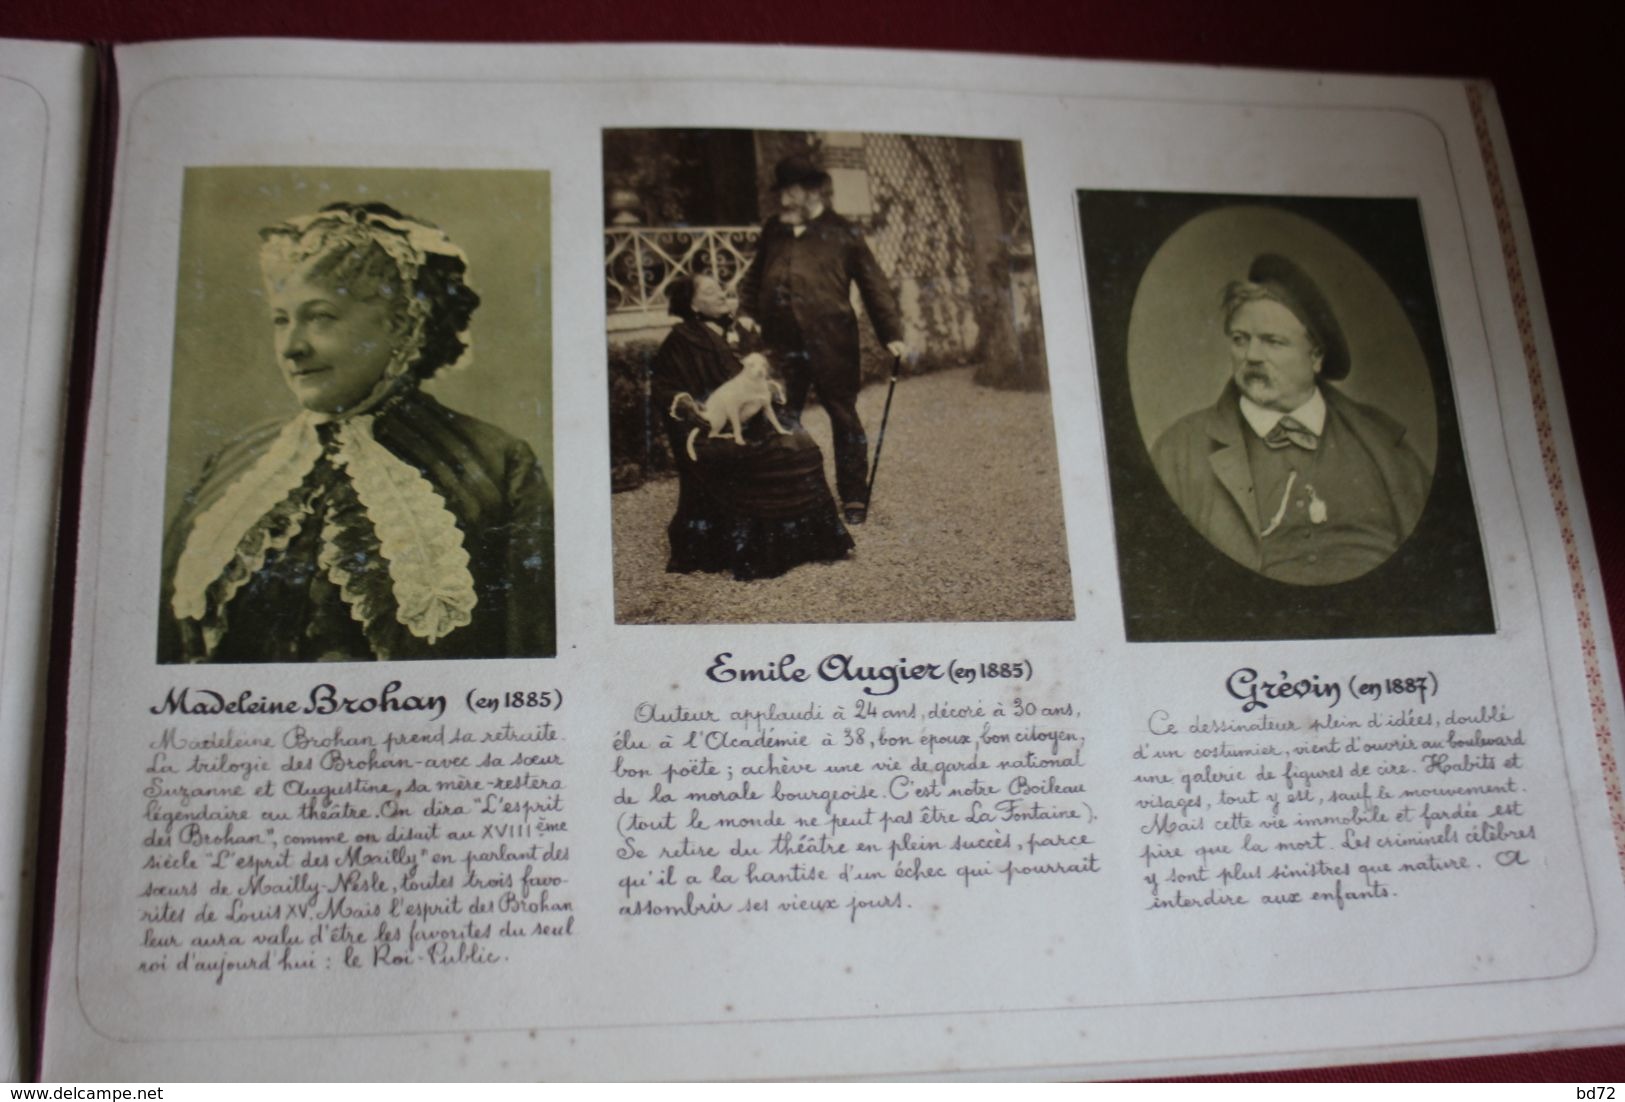 ALBUM DE PHOTOGRAPHIES : " dans l'intimité de personnages illustres, 1850-1900 "